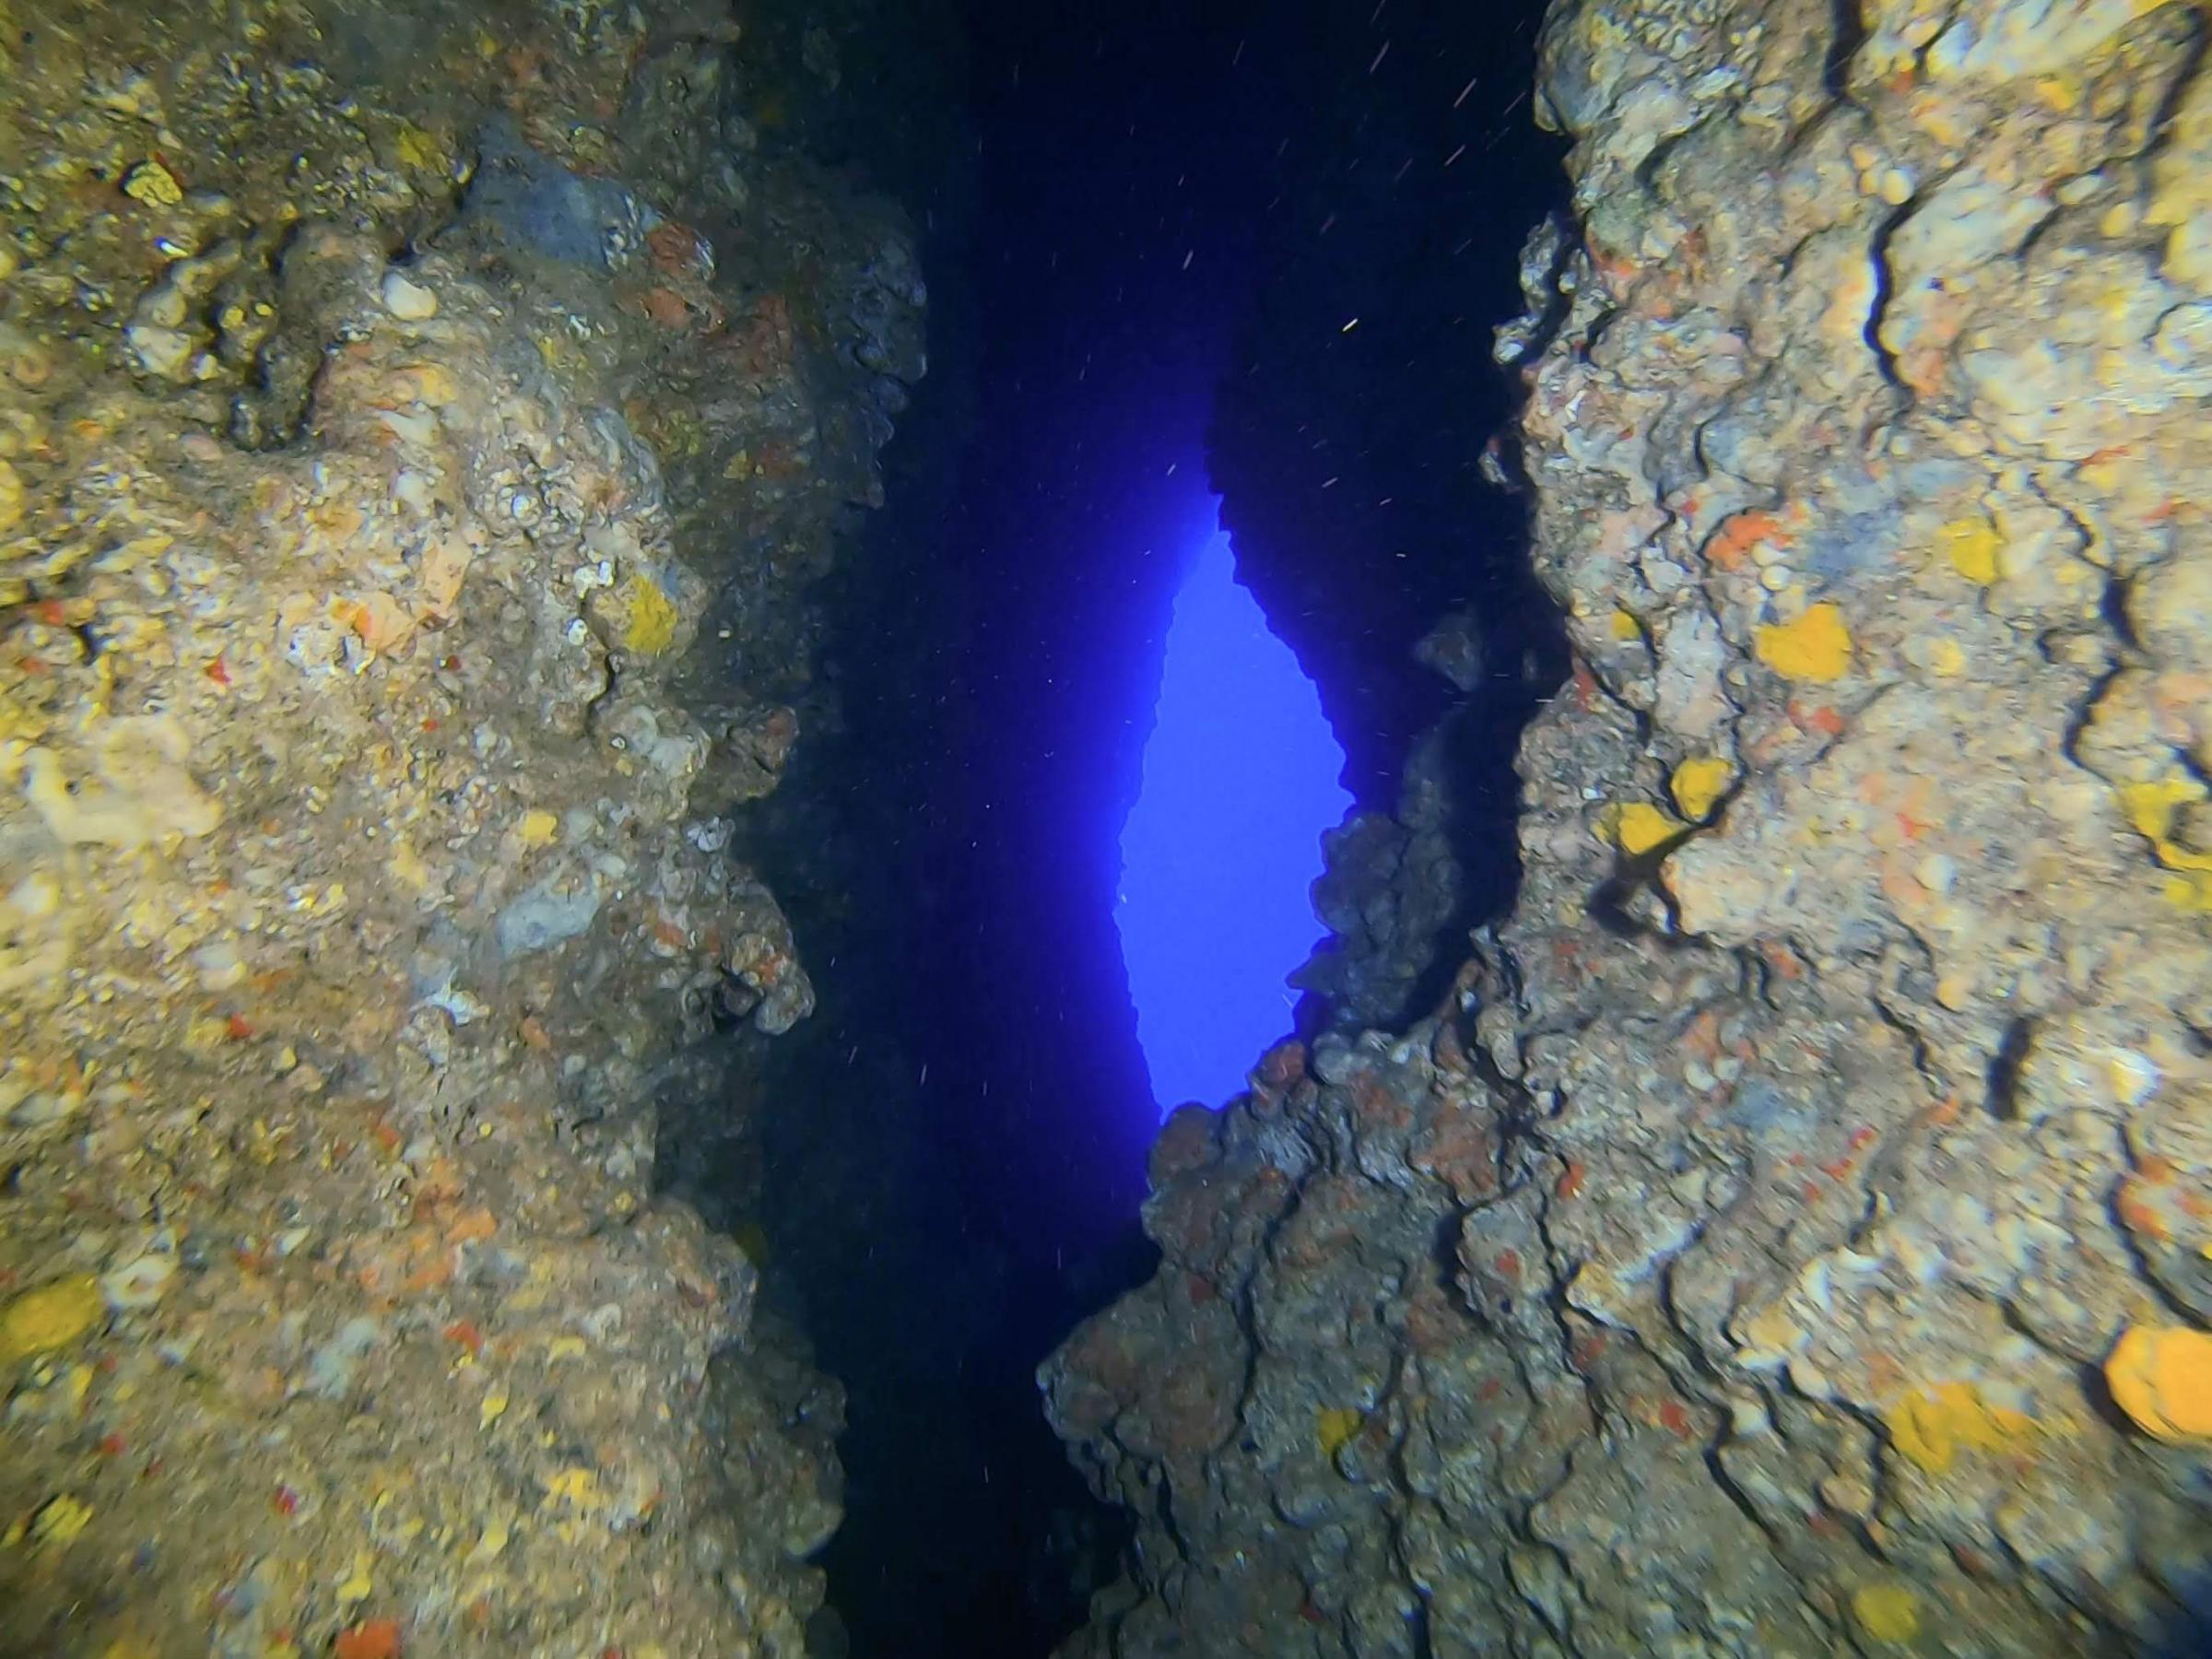 Second Corridor Cave Exit [Adam Sant]